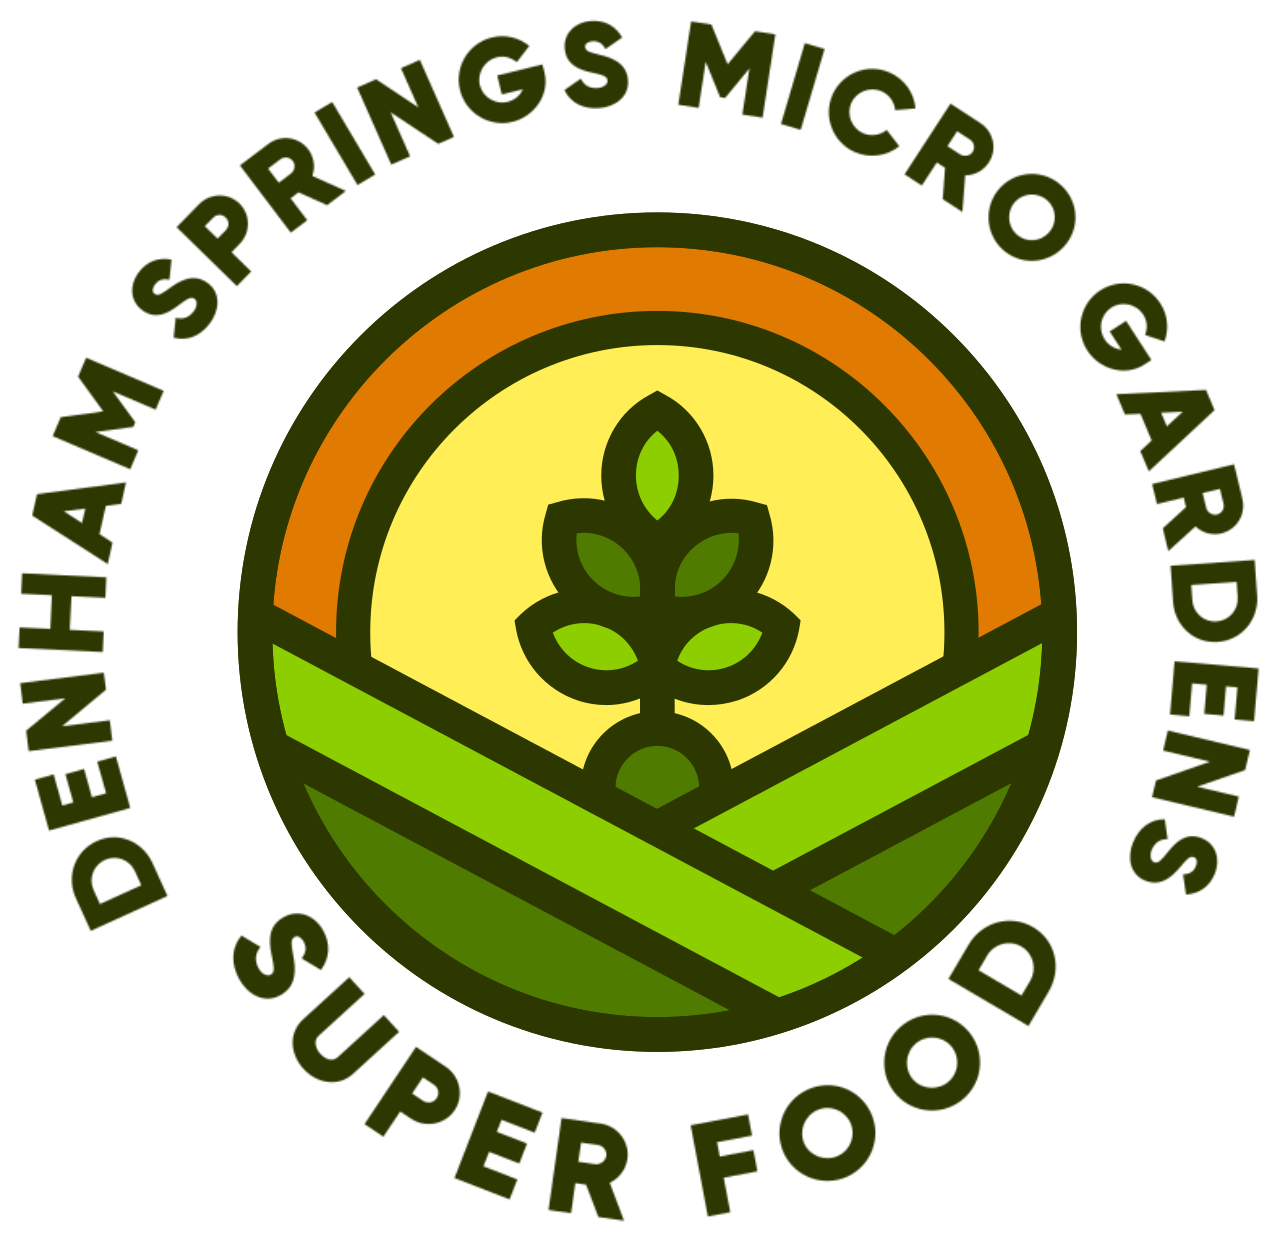 Denham Springs Micro Gardens 's logo